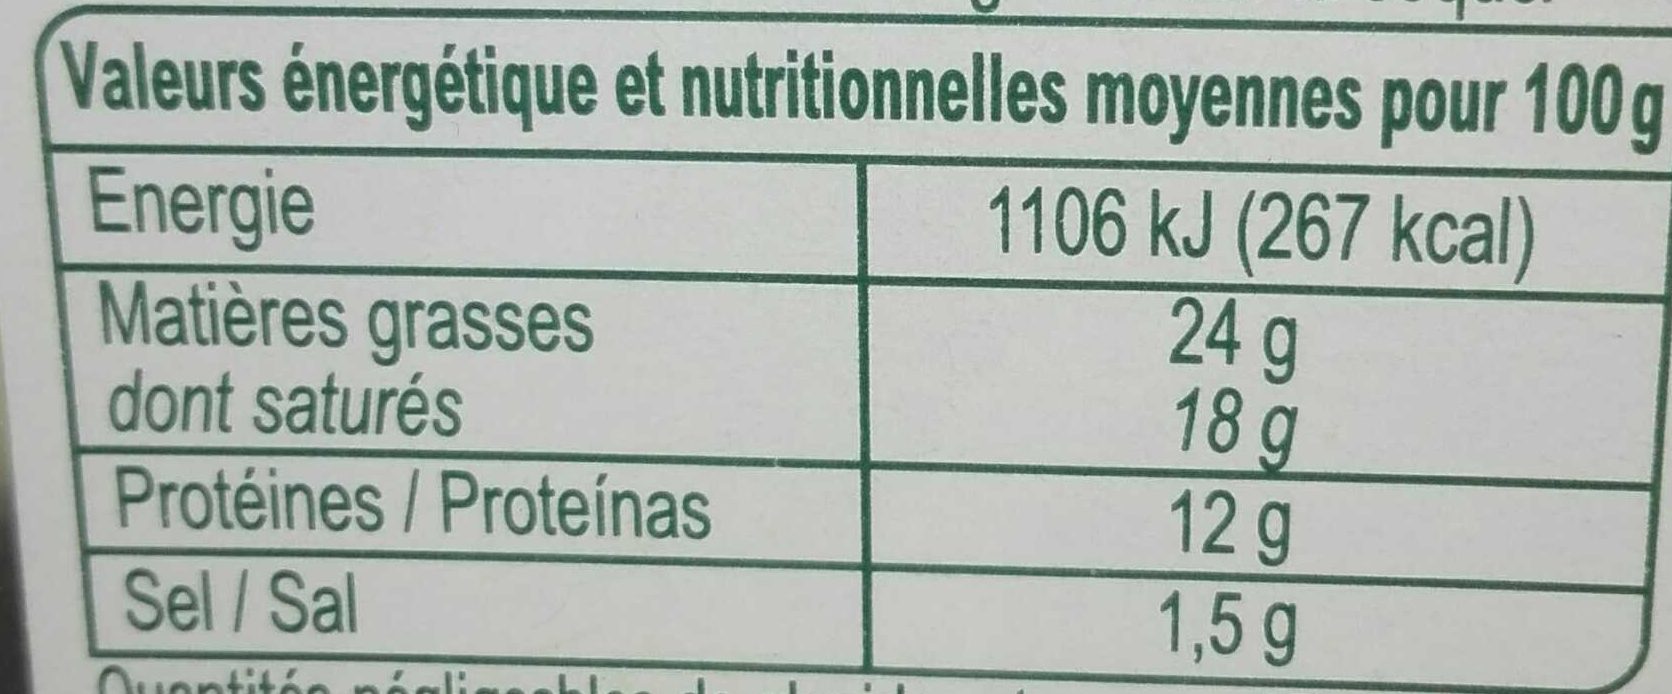 Saint Félicien - Tableau nutritionnel